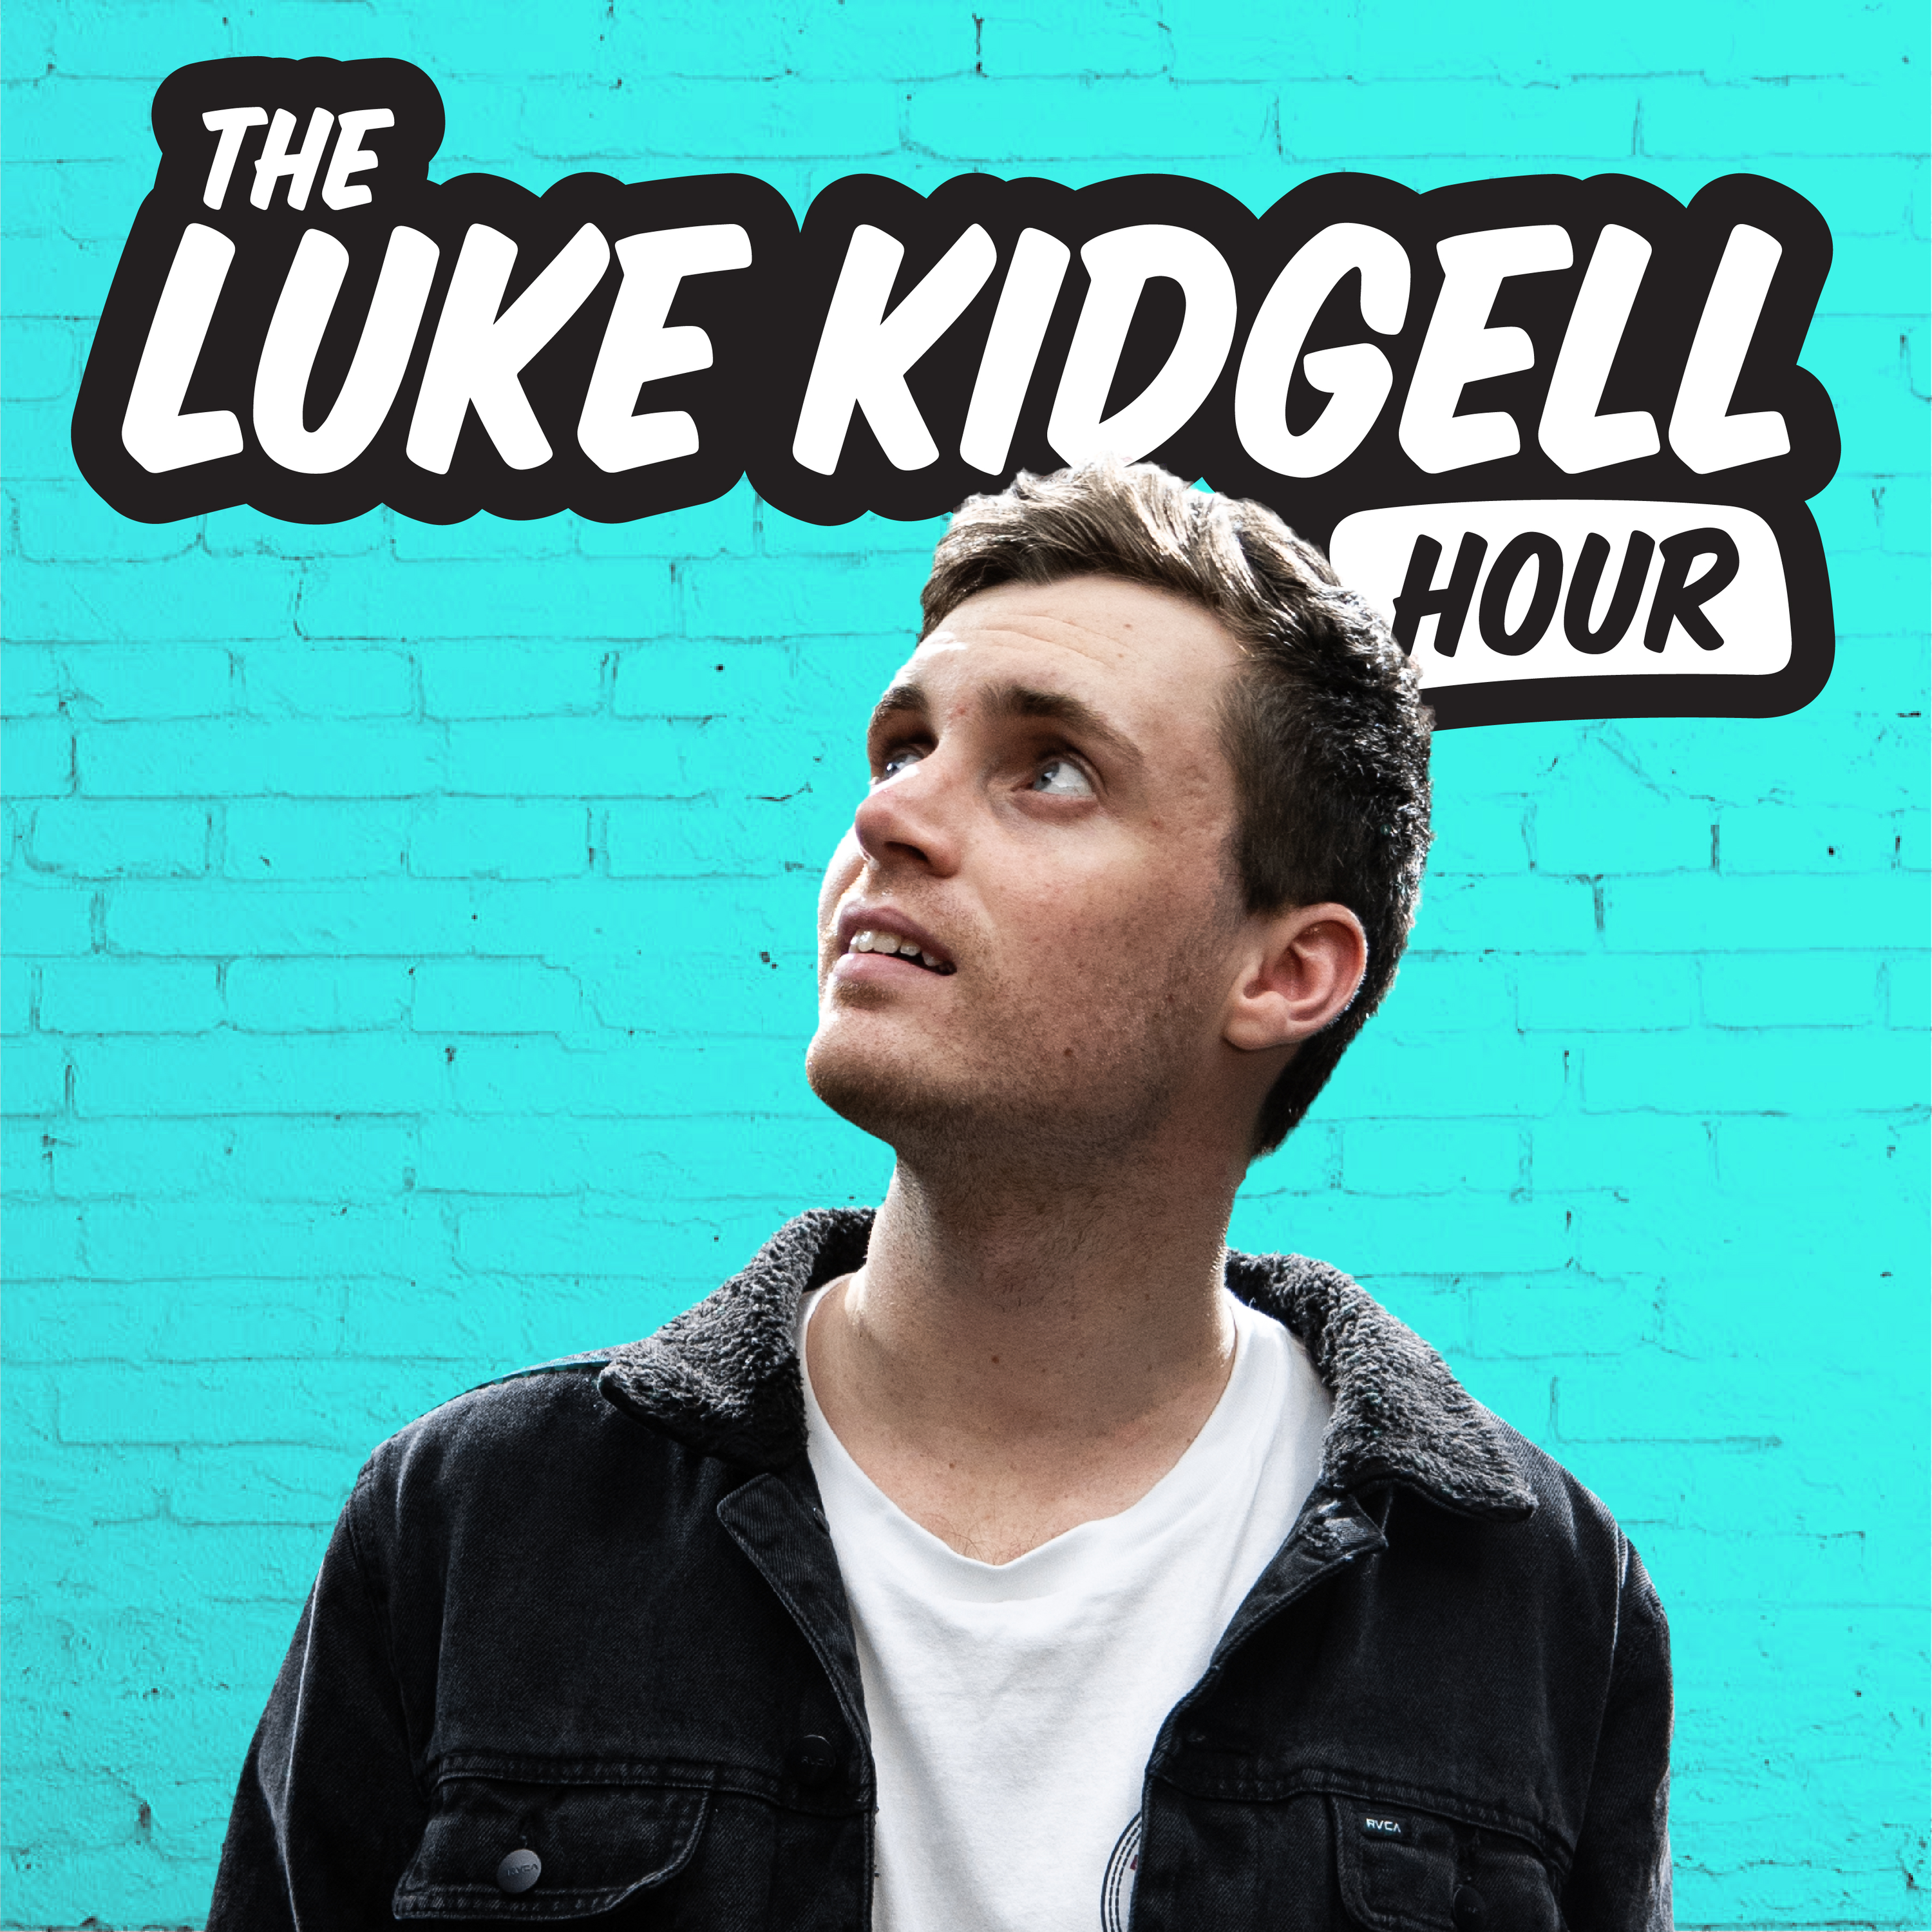 A weekend full of injuries | The Luke Kidgell Hour #184